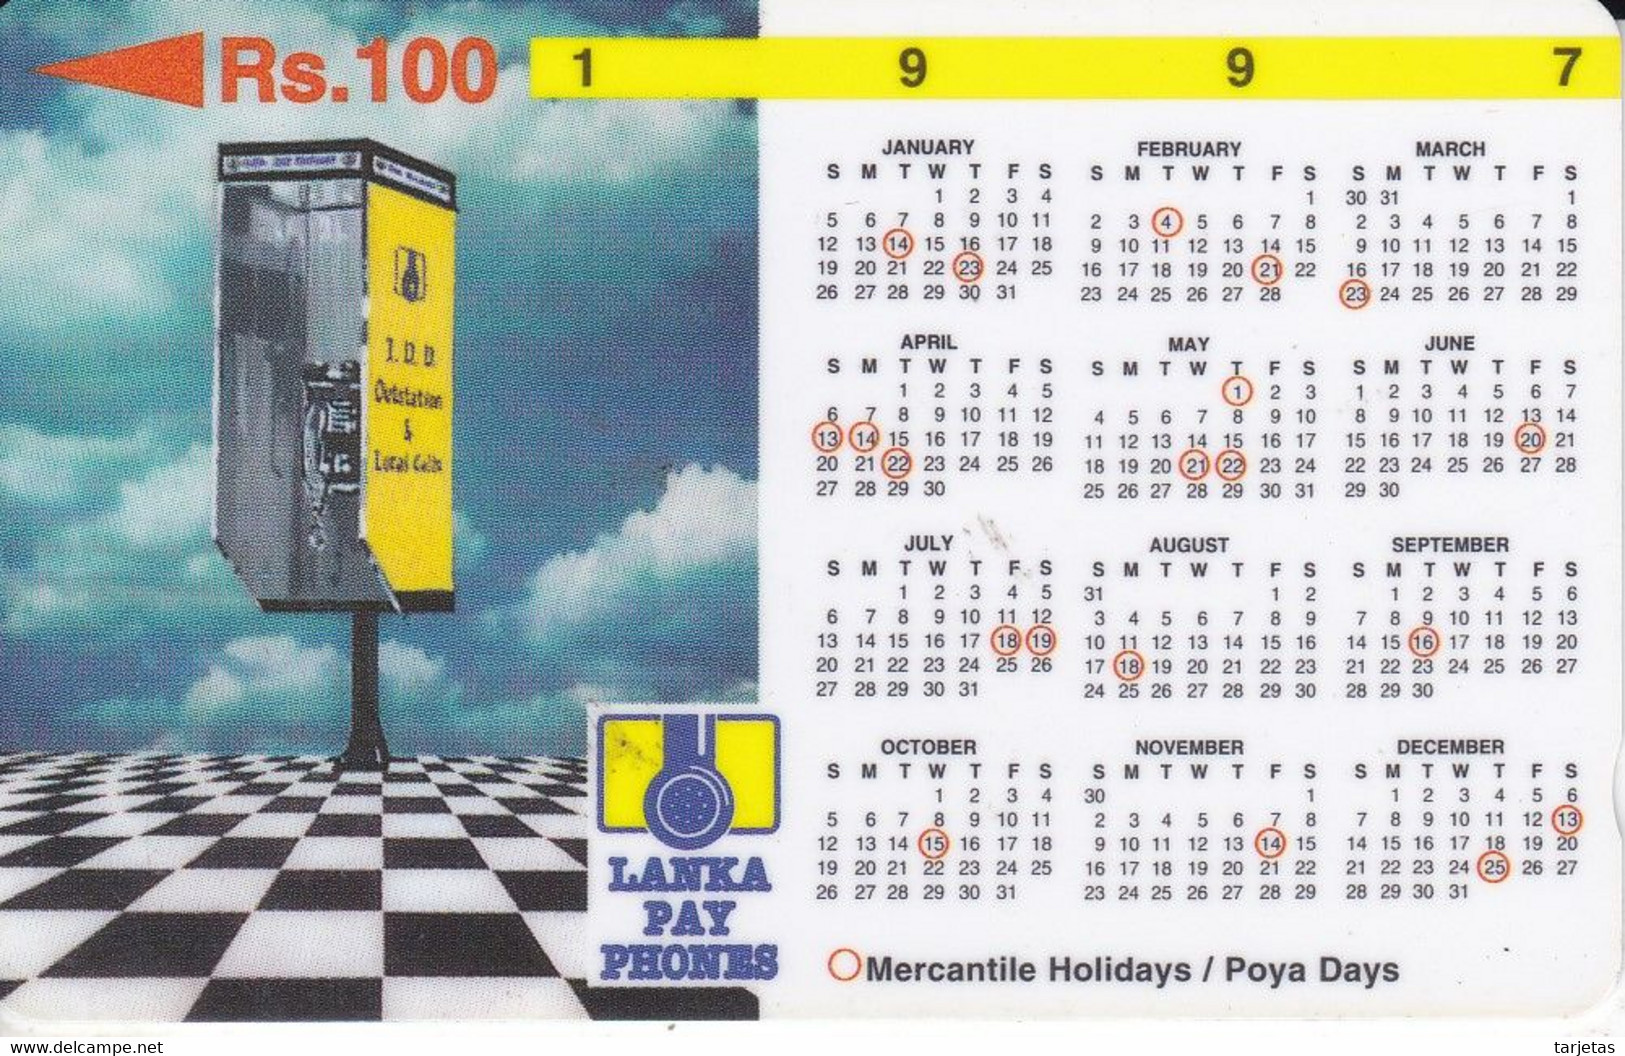 (31SRLB) TARJETA DE SRY LANKA DE Rs.100 CALENDARIO 1997 - Sri Lanka (Ceilán)